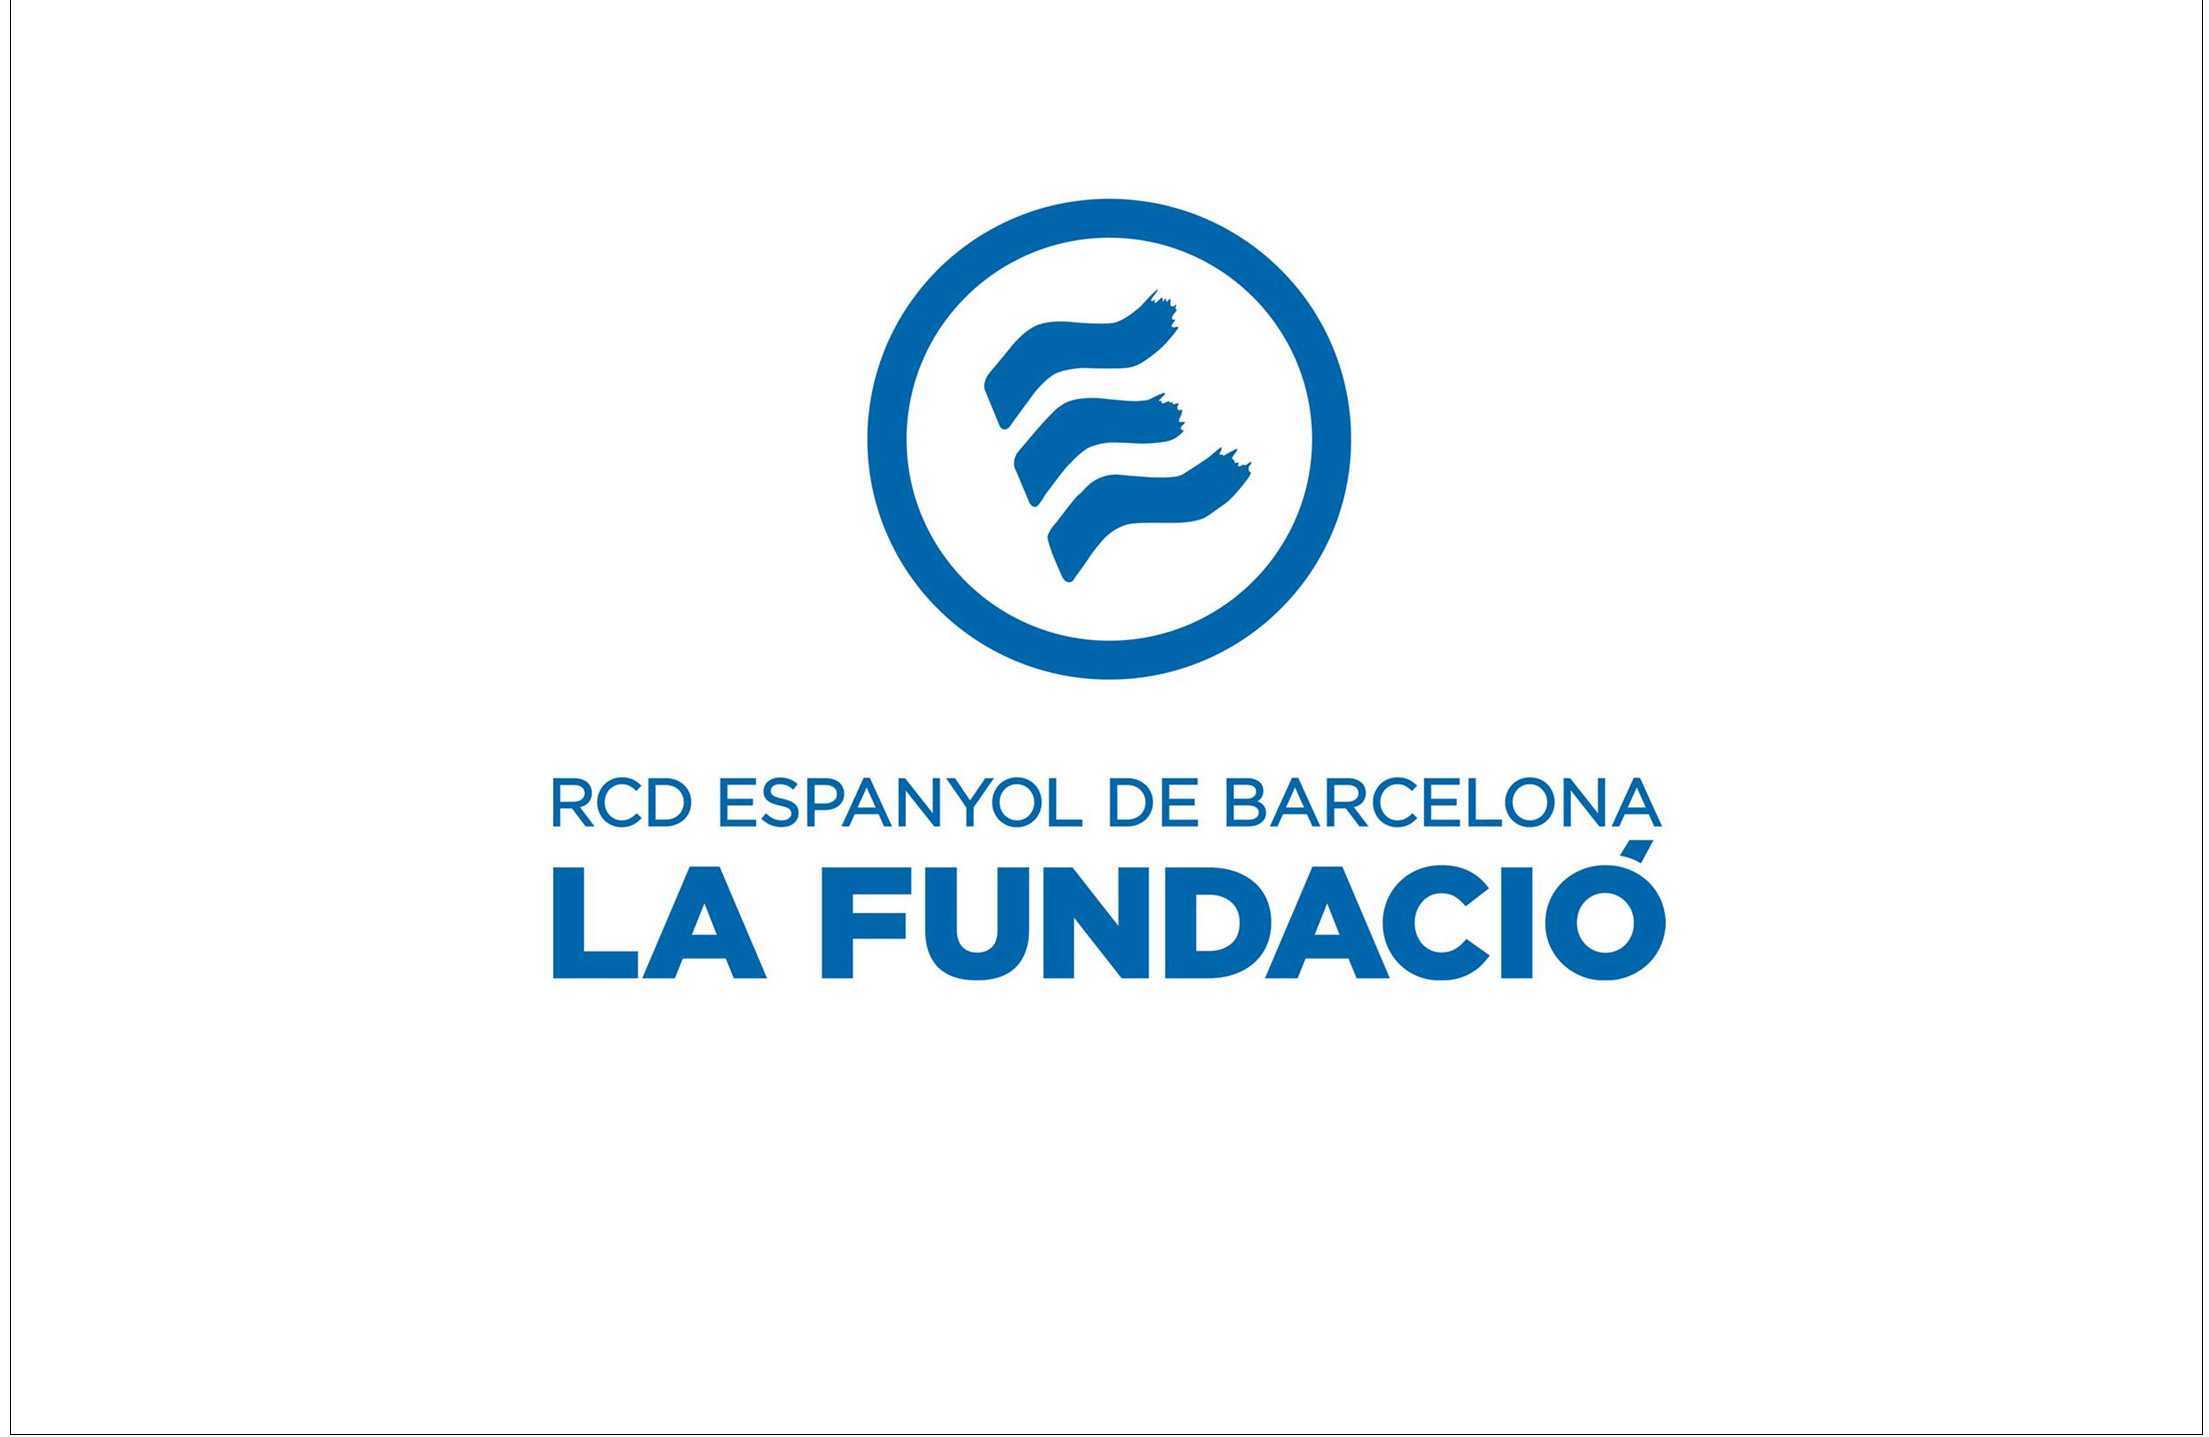 Comunicado oficial de la Fundació RCDE